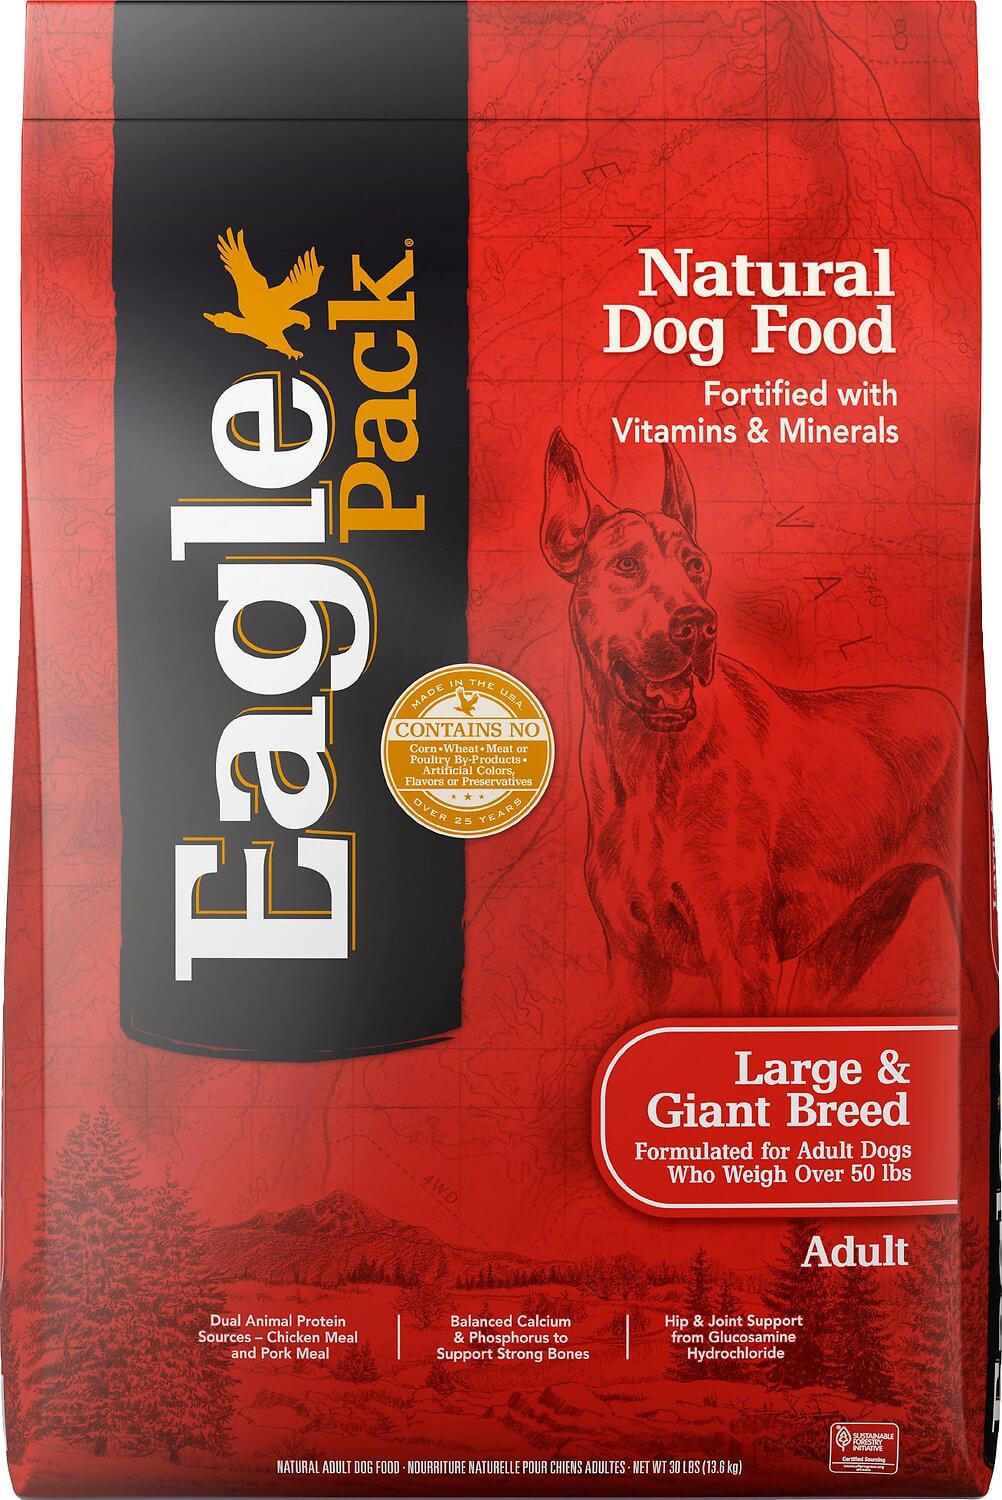 eagle pack dog food